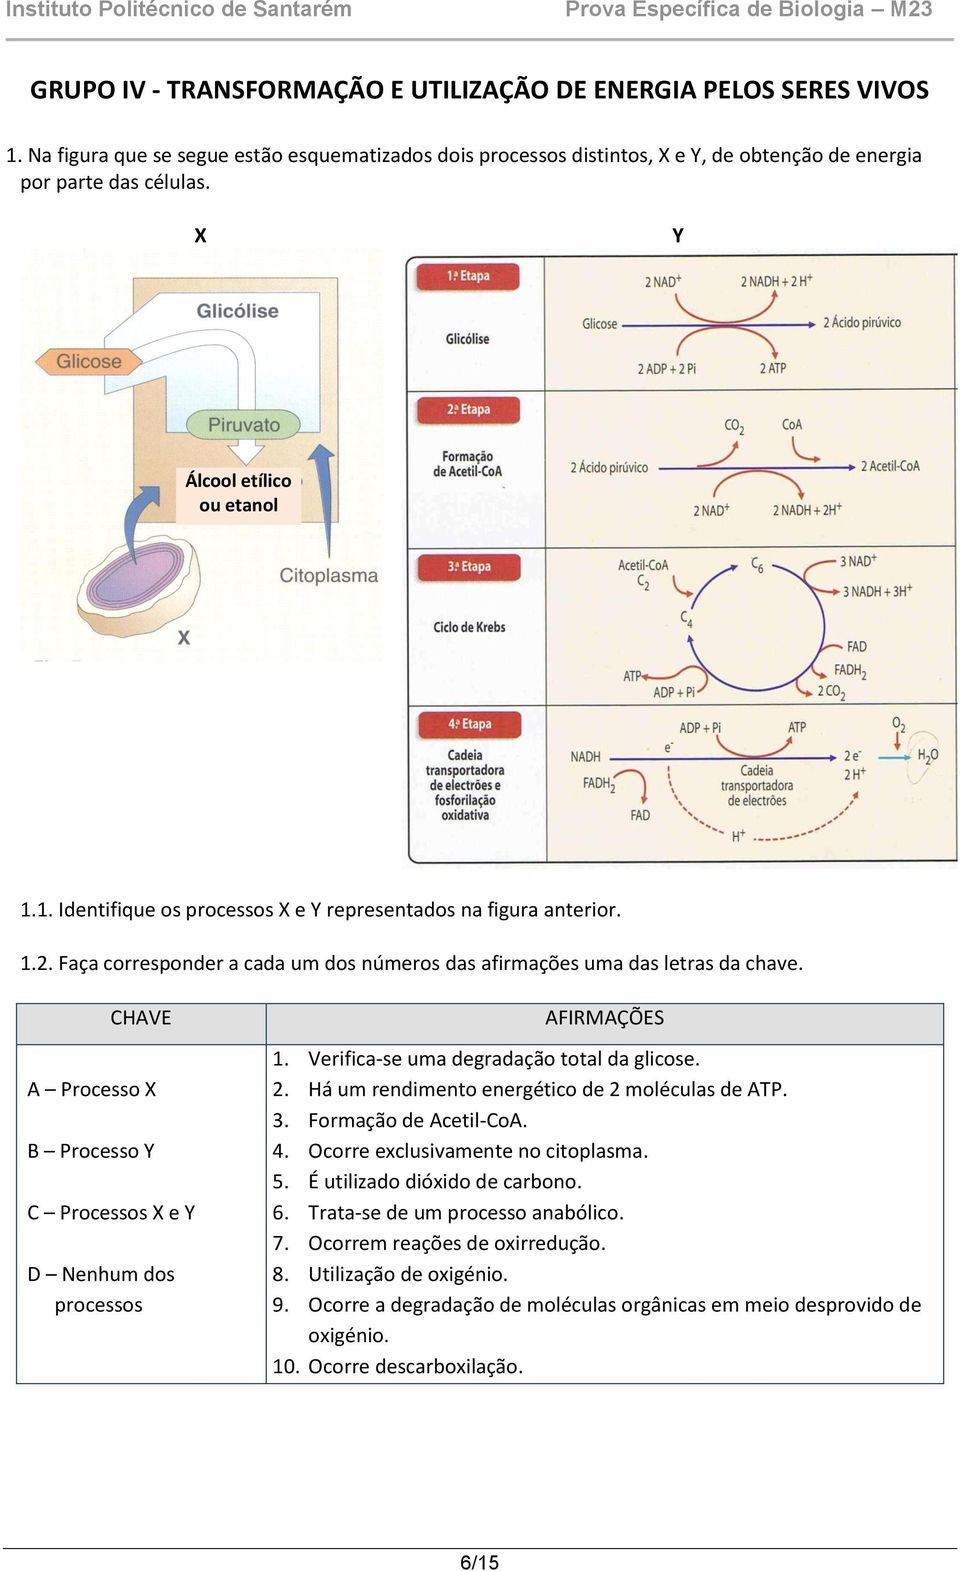 CHAVE A Processo X B Processo Y C Processos X e Y D Nenhum dos processos AFIRMAÇÕES 1. Verifica-se uma degradação total da glicose. 2. Há um rendimento energético de 2 moléculas de ATP. 3.